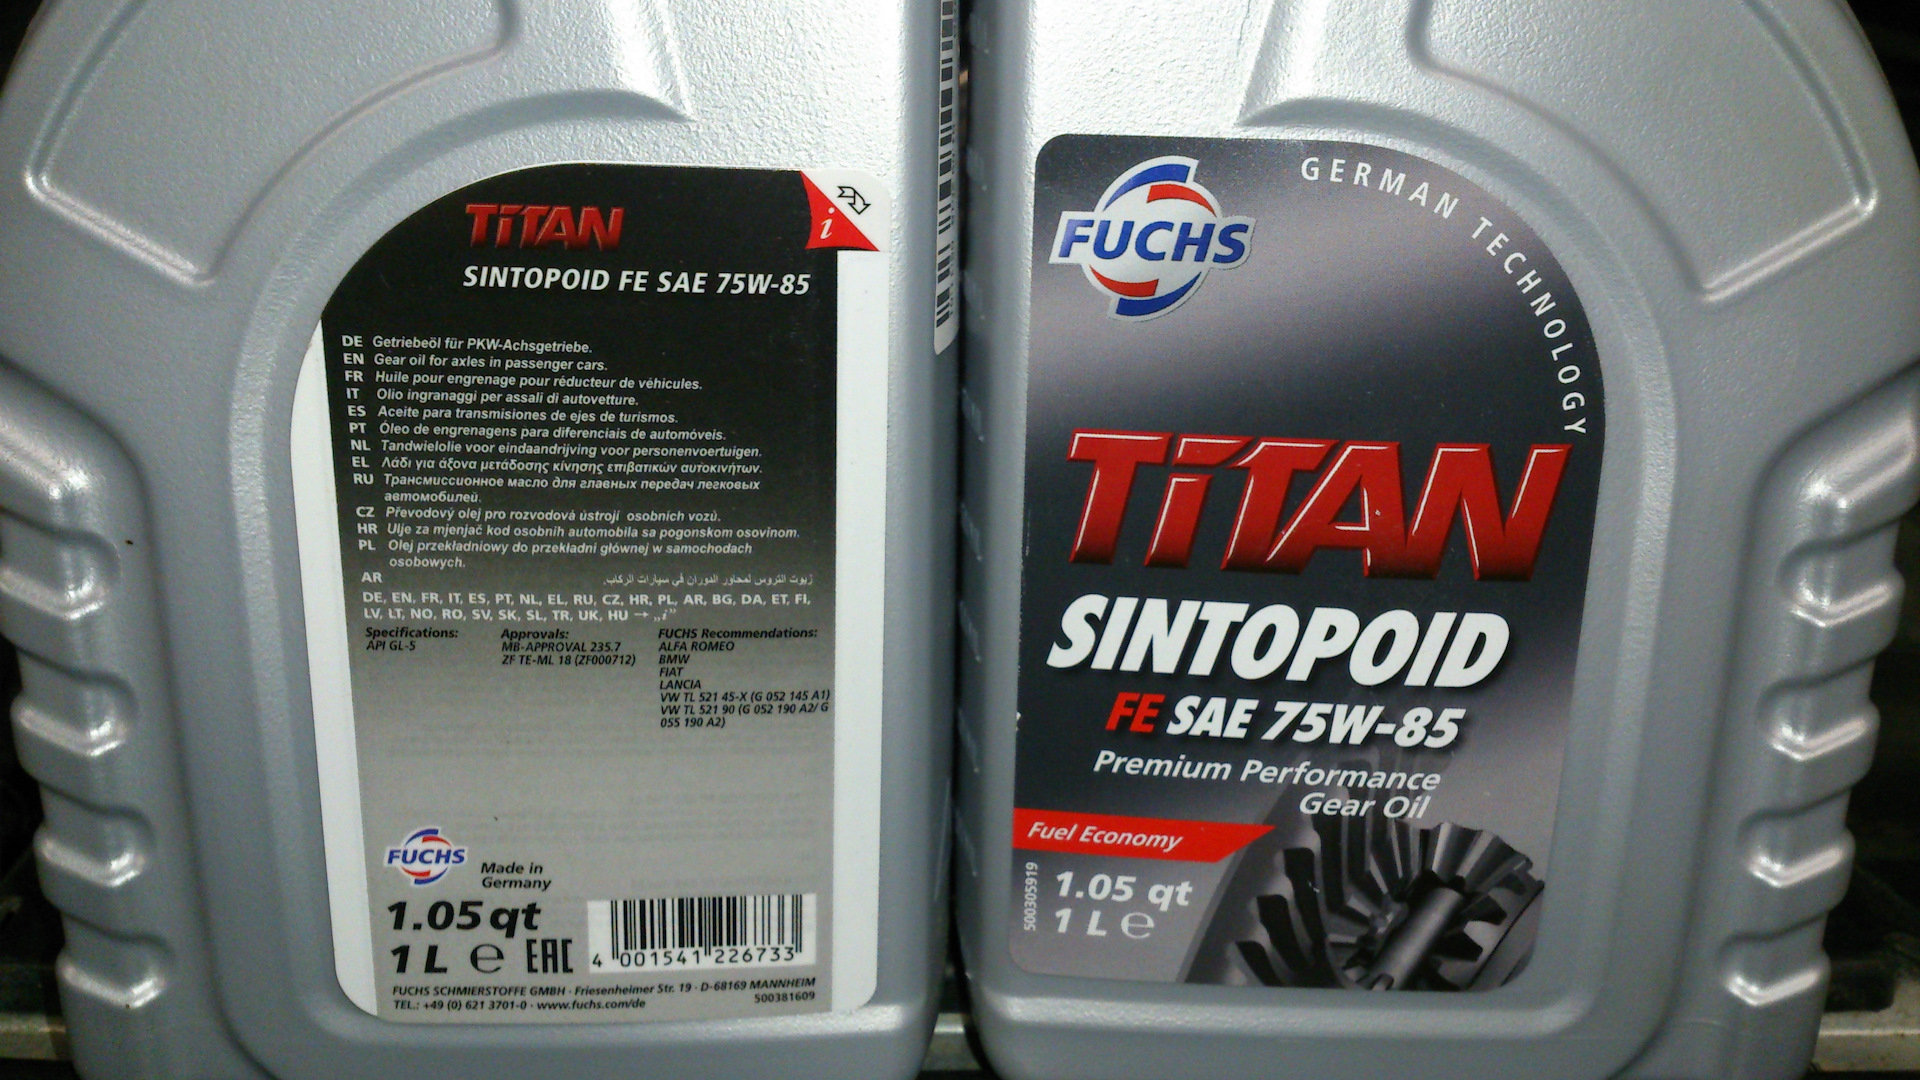 Sae 75w85. Fuchs Titan Sintopoid Fe SAE 75w-85 75w-85. Fuchs Titan Gear syn SAE 75w-90. Titan Sintopoid Fe 75w-85 (1 литр). Fuchs Titan Cytrac Pro 235.31 SAE 75w-85.